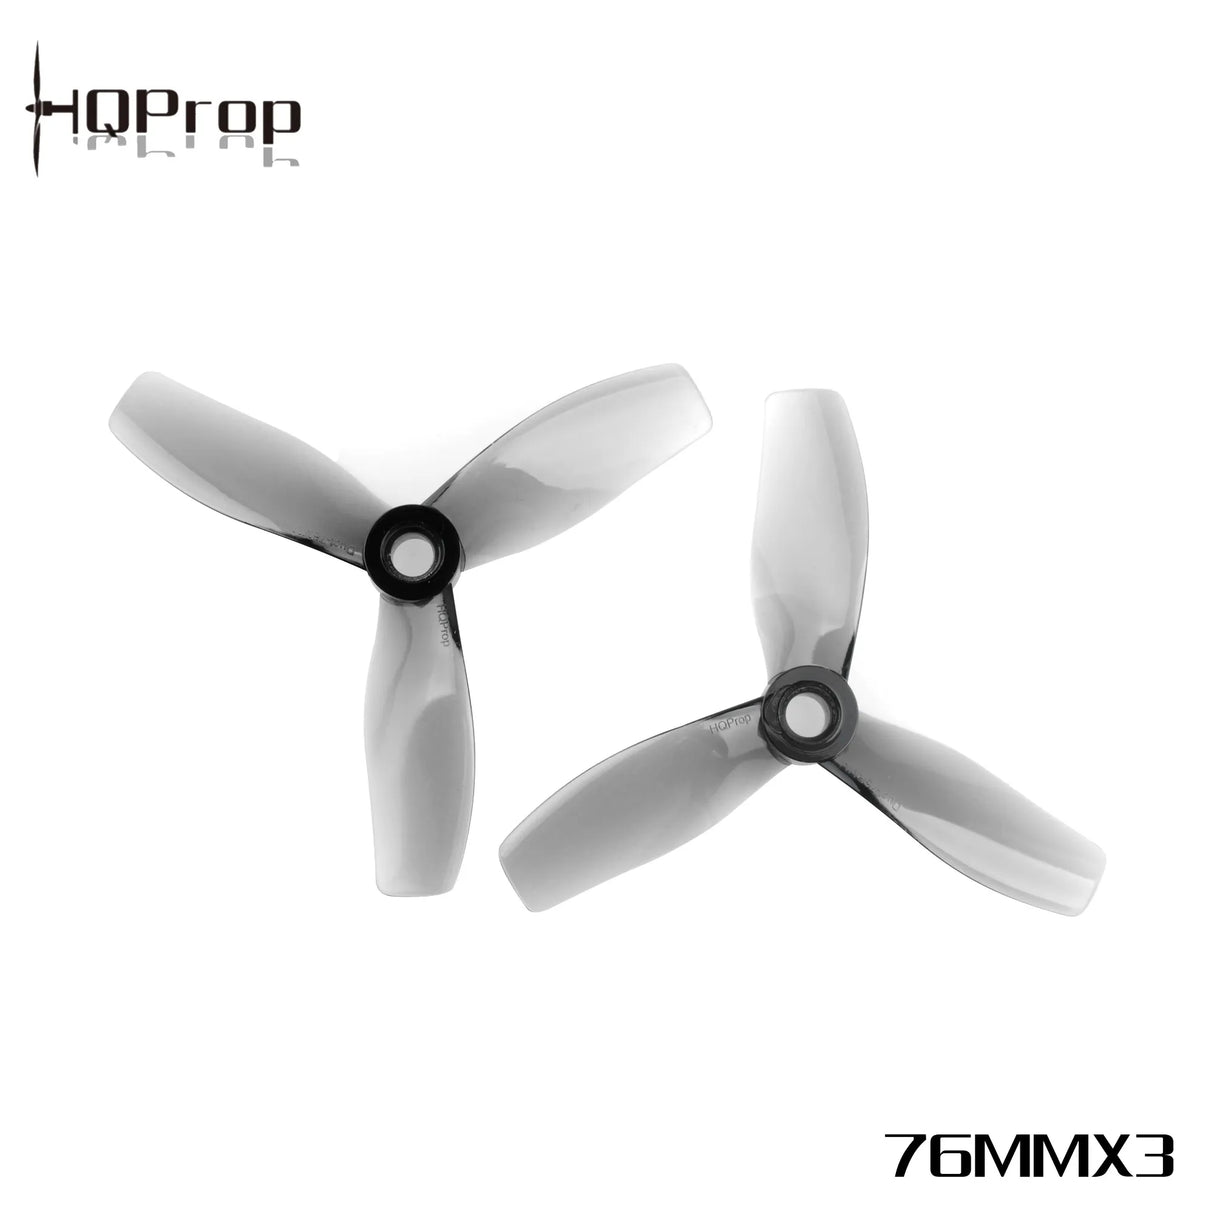 HQProp D76MMX3 Propellers - DroneDynamics.ca